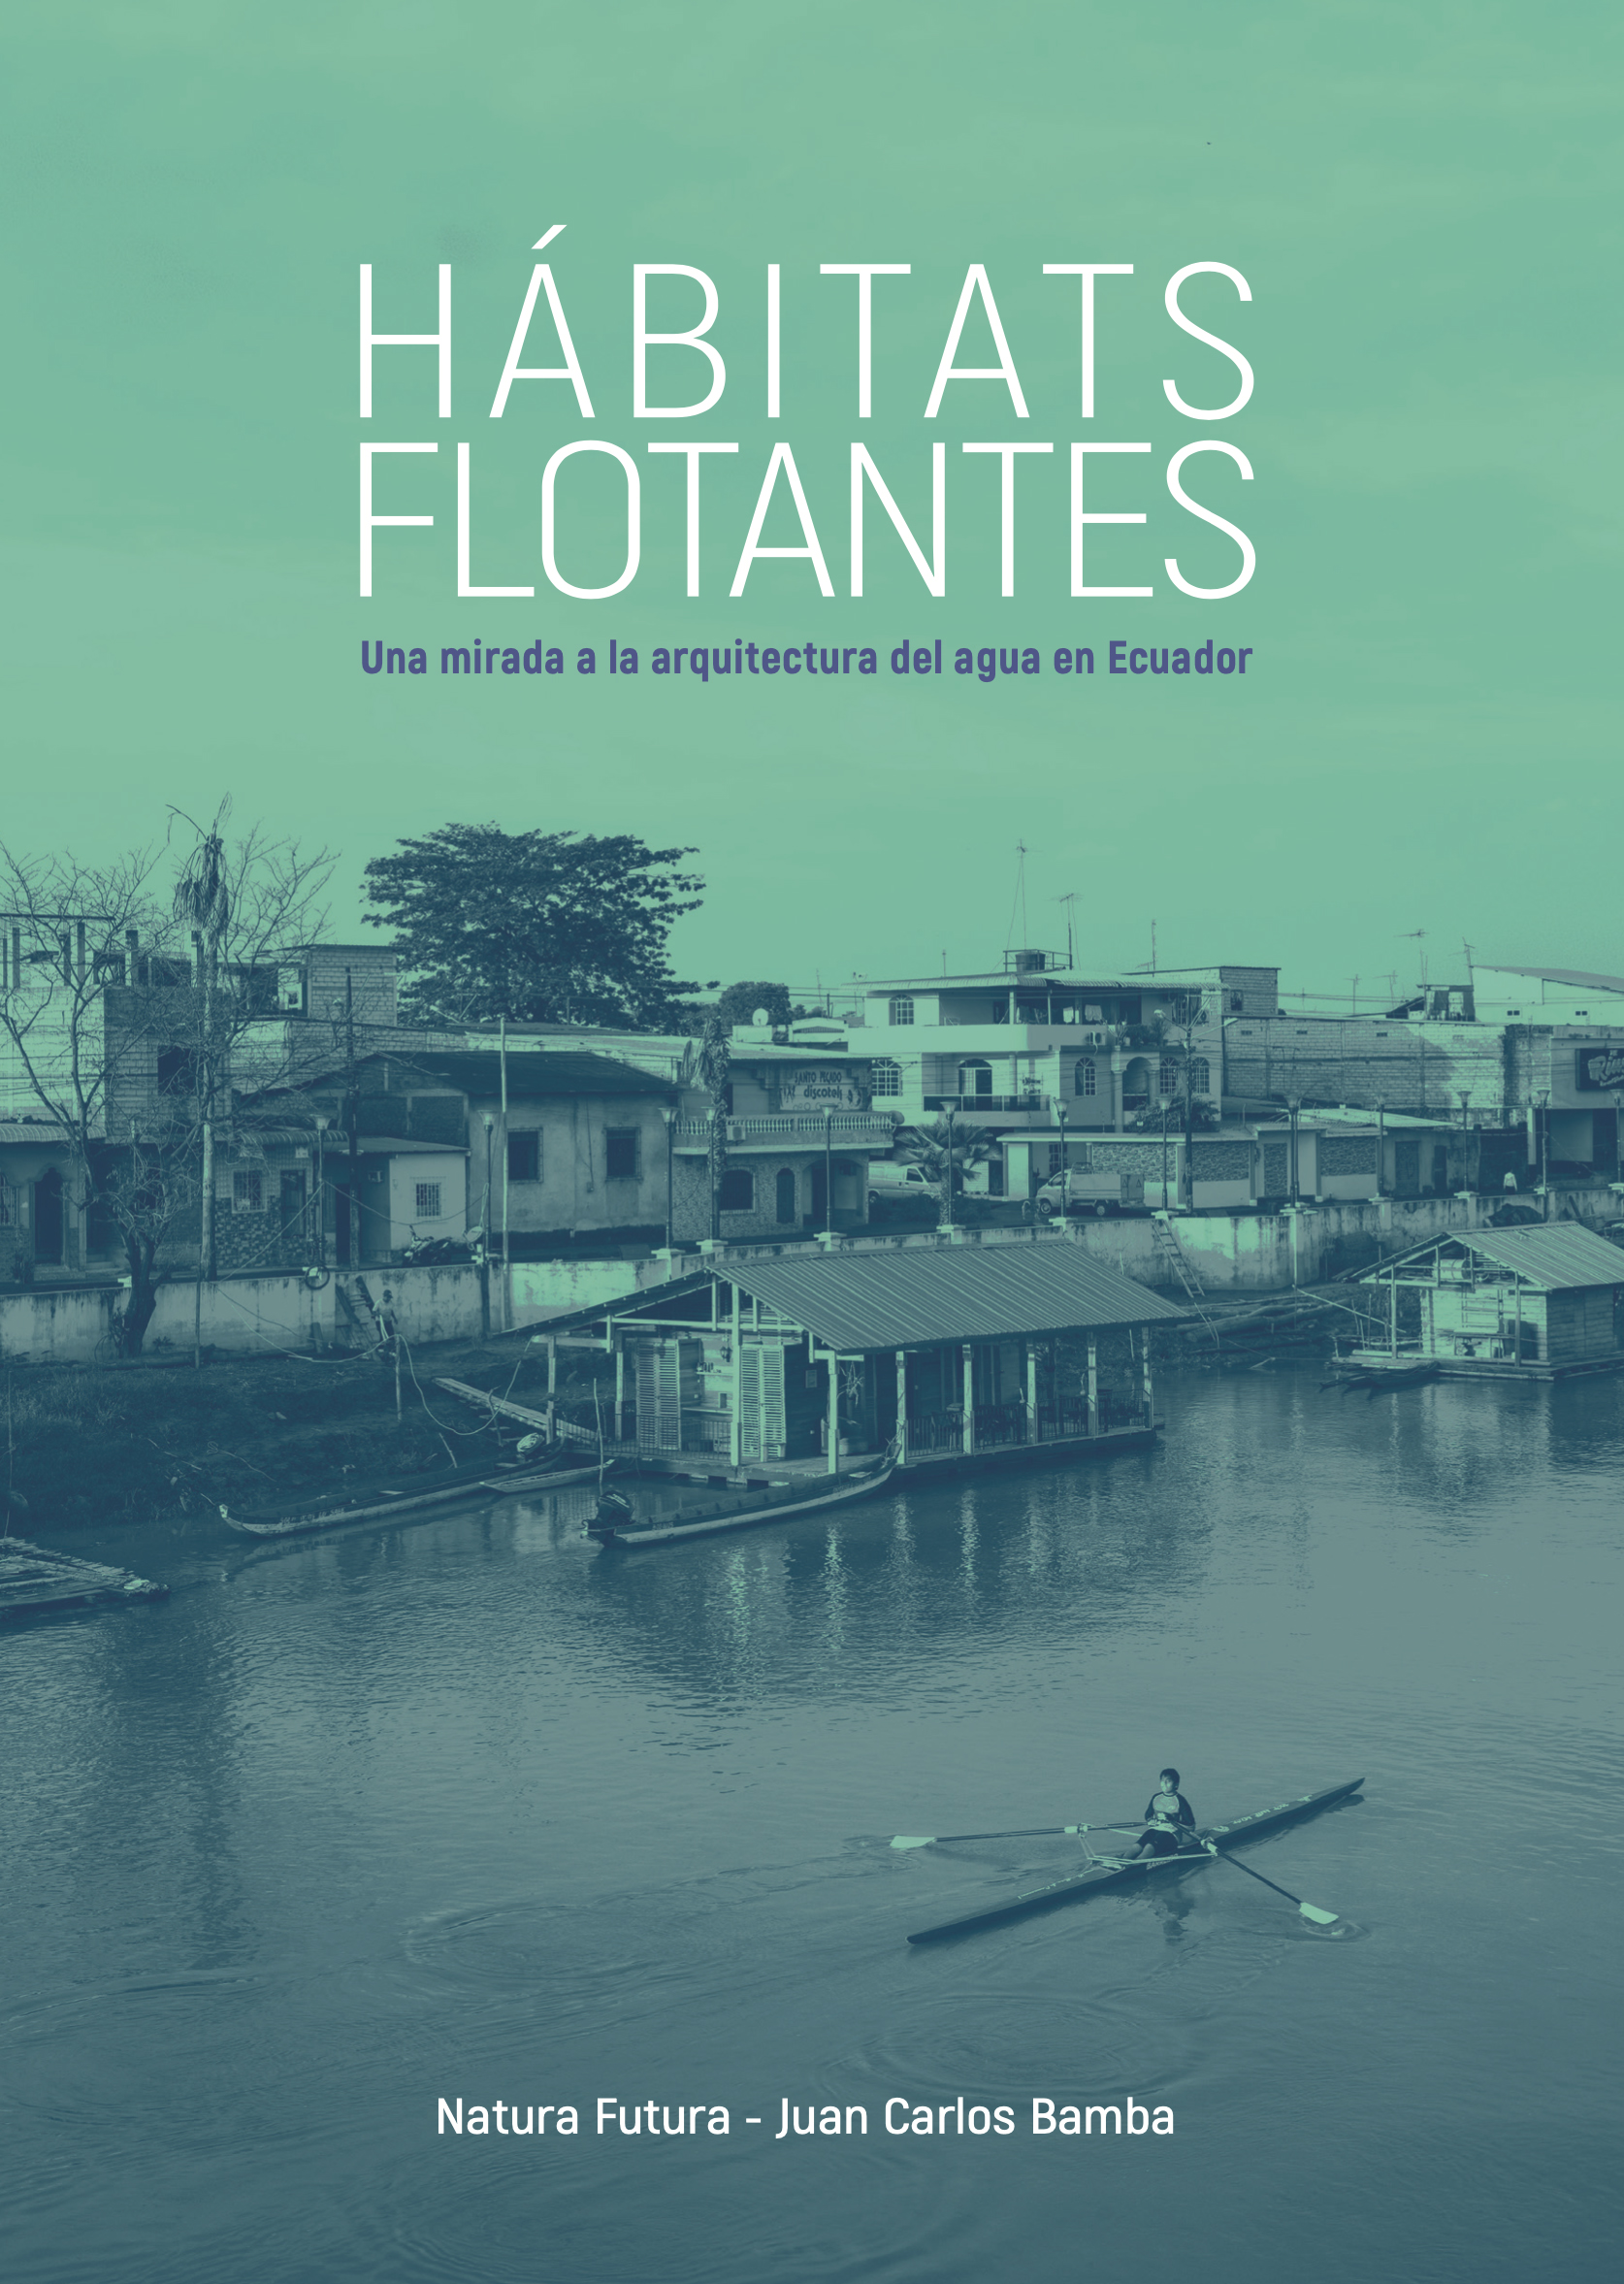 HÁBITATS FLOTANTES: Una mirada a la arquitectura del agua en Ecuador